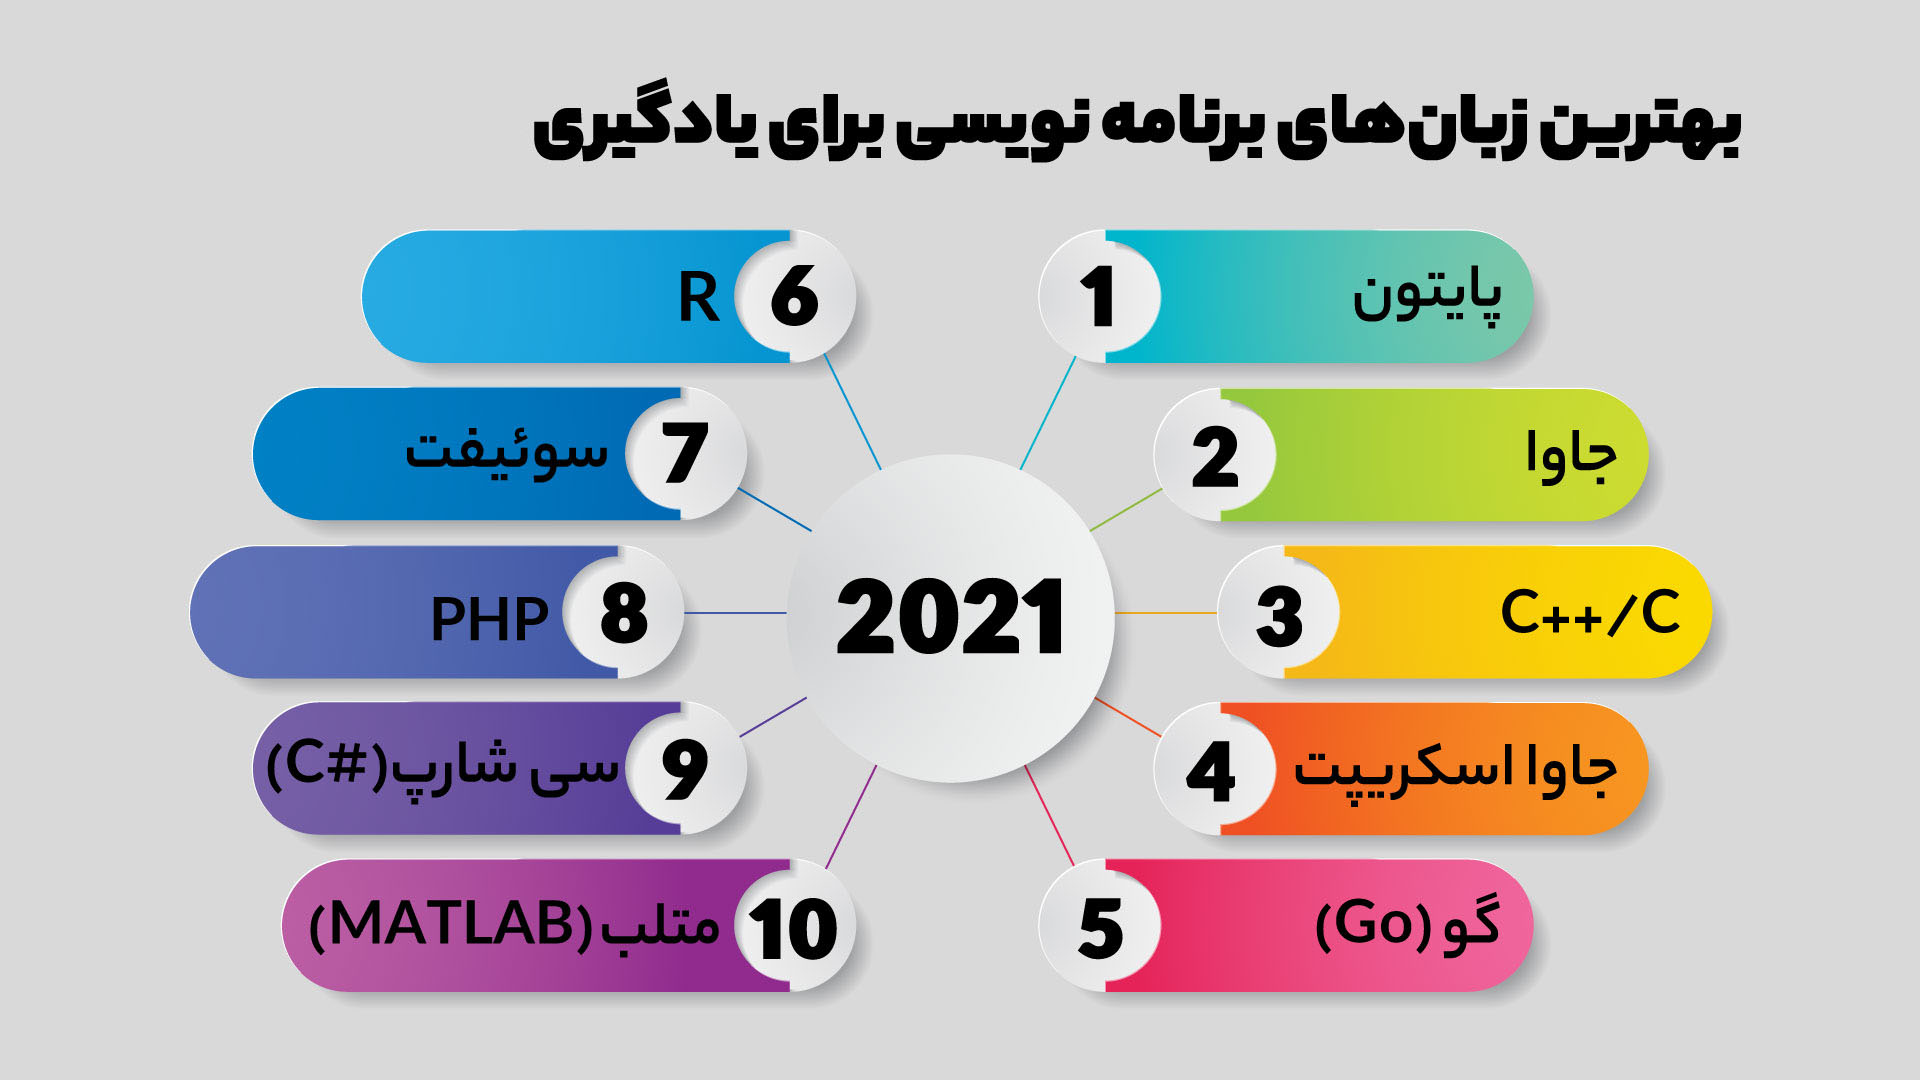 علم و دانش،آموزش تعمیرات موبایل در تبریز،دوره های فنی حرفه ای در تبریز